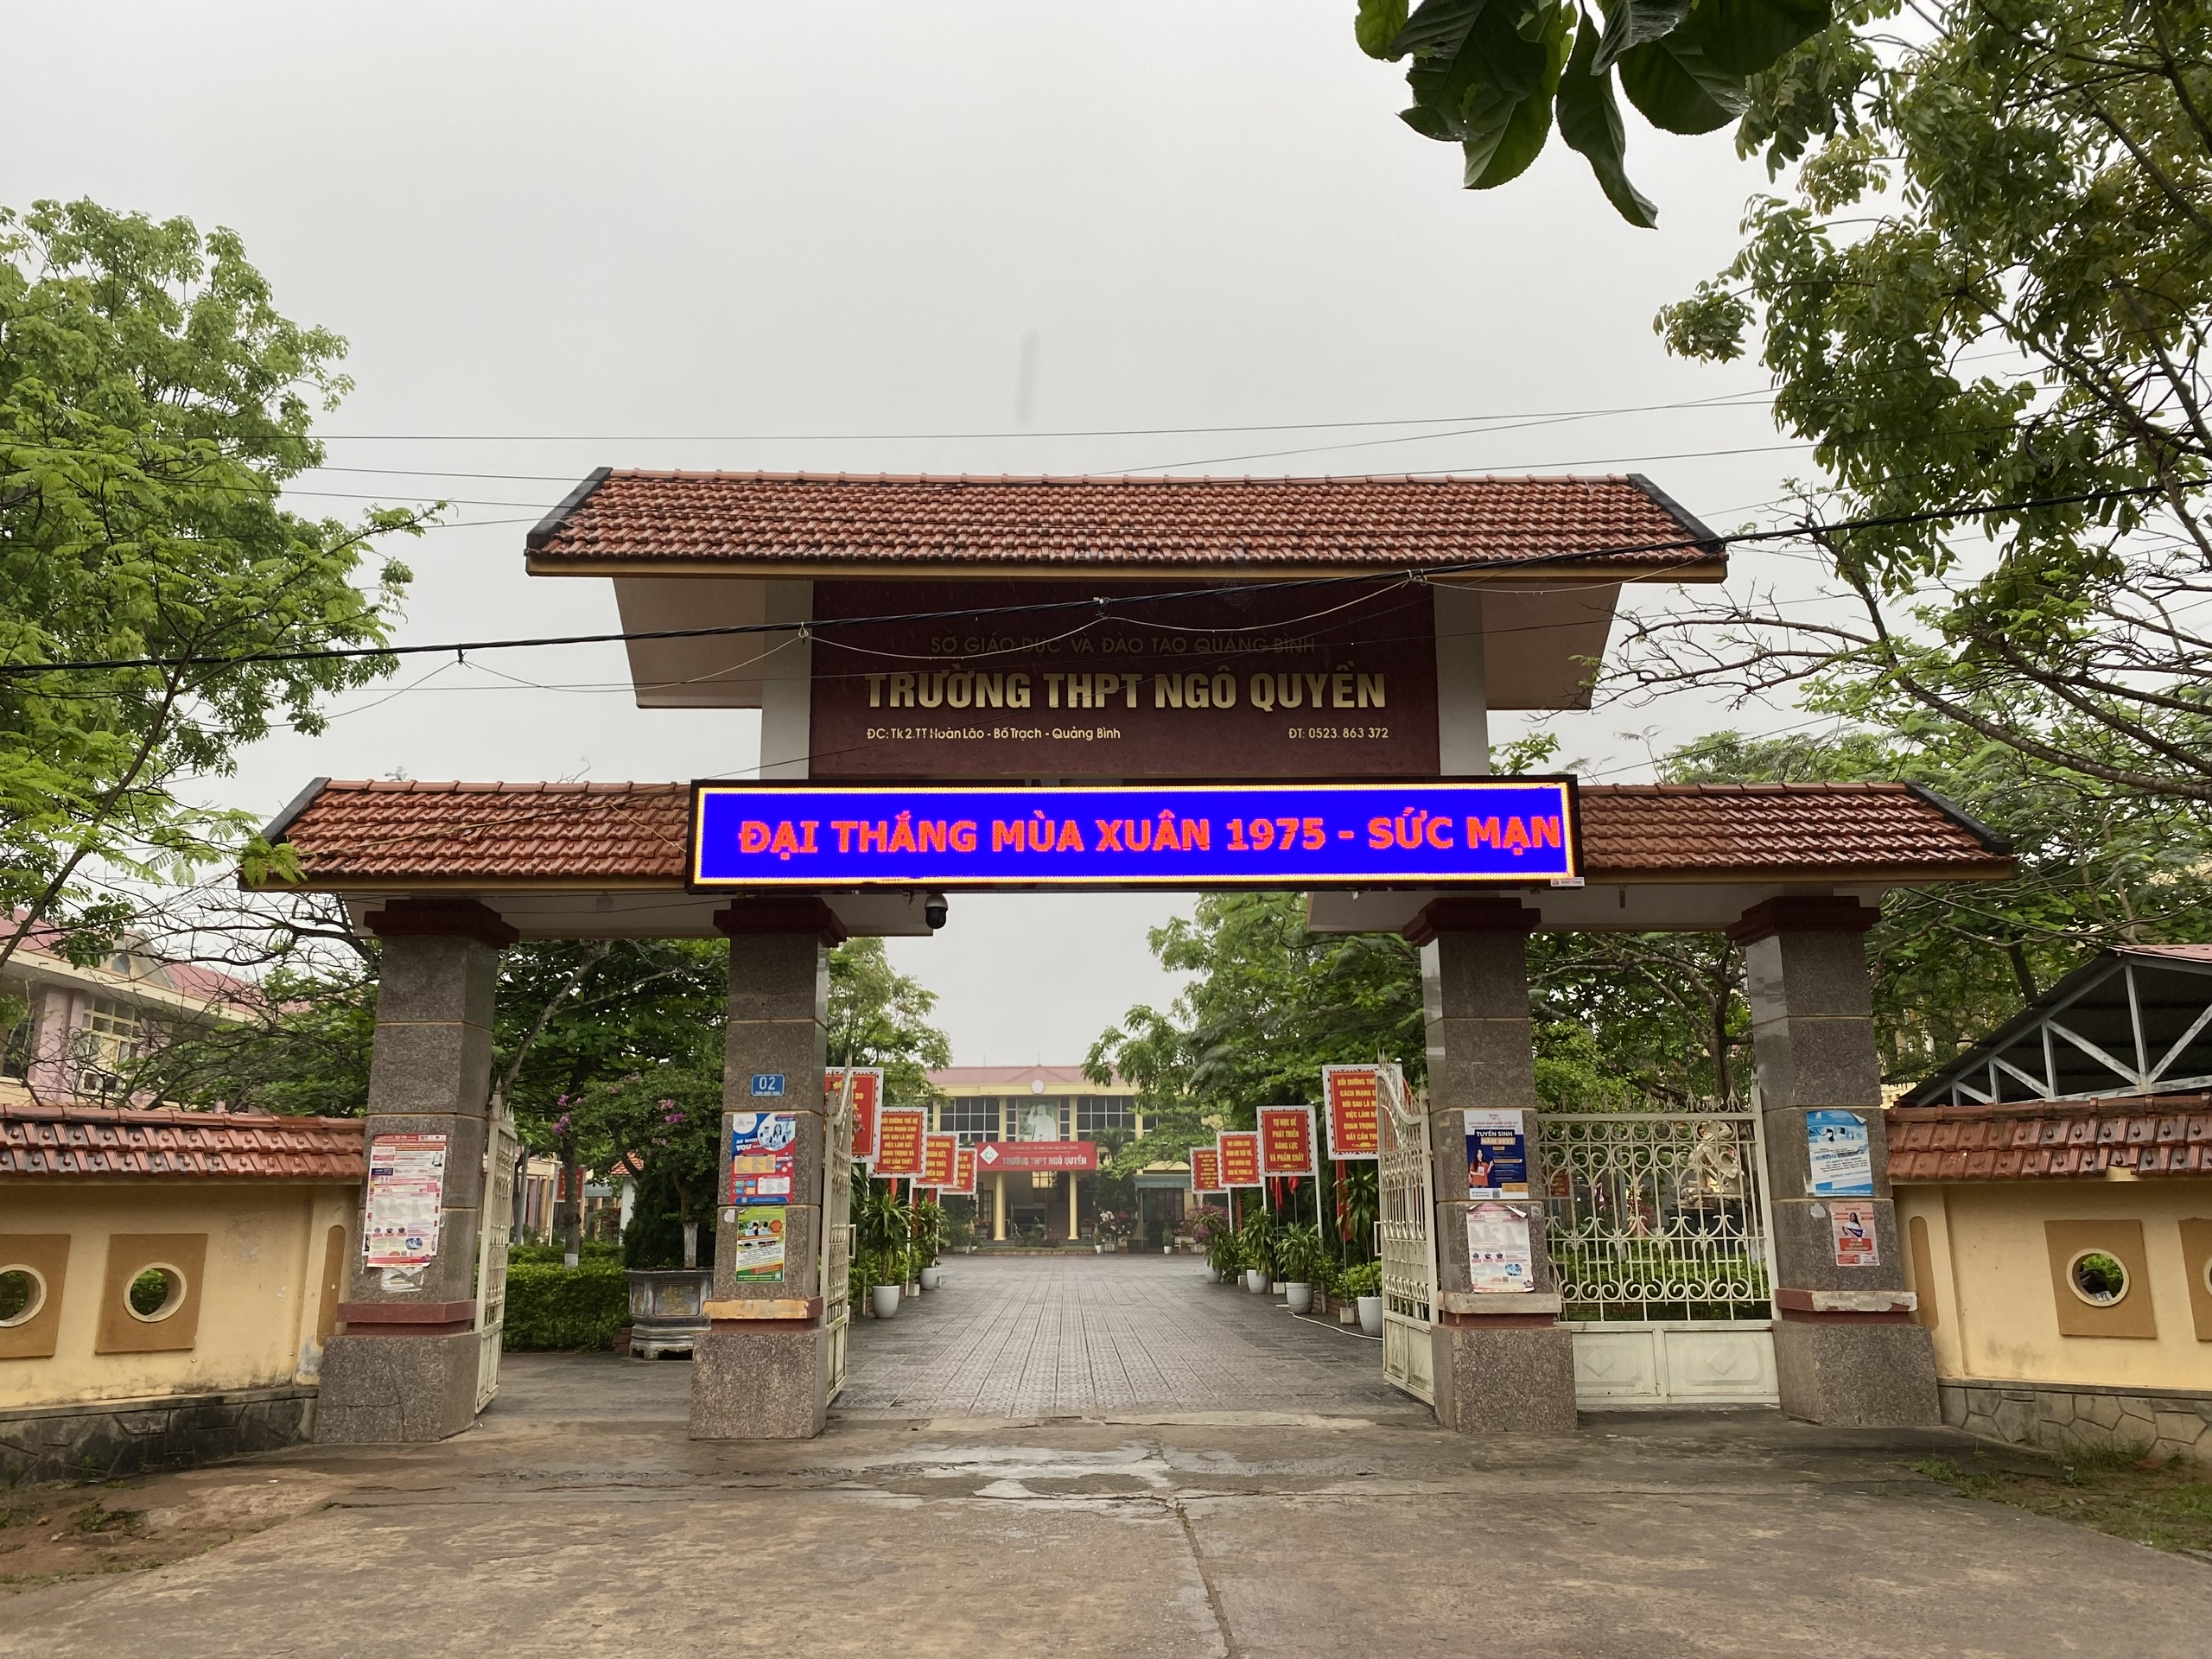 Trường THPT Ngô Quyền, đơn vị công tác của bà Hà